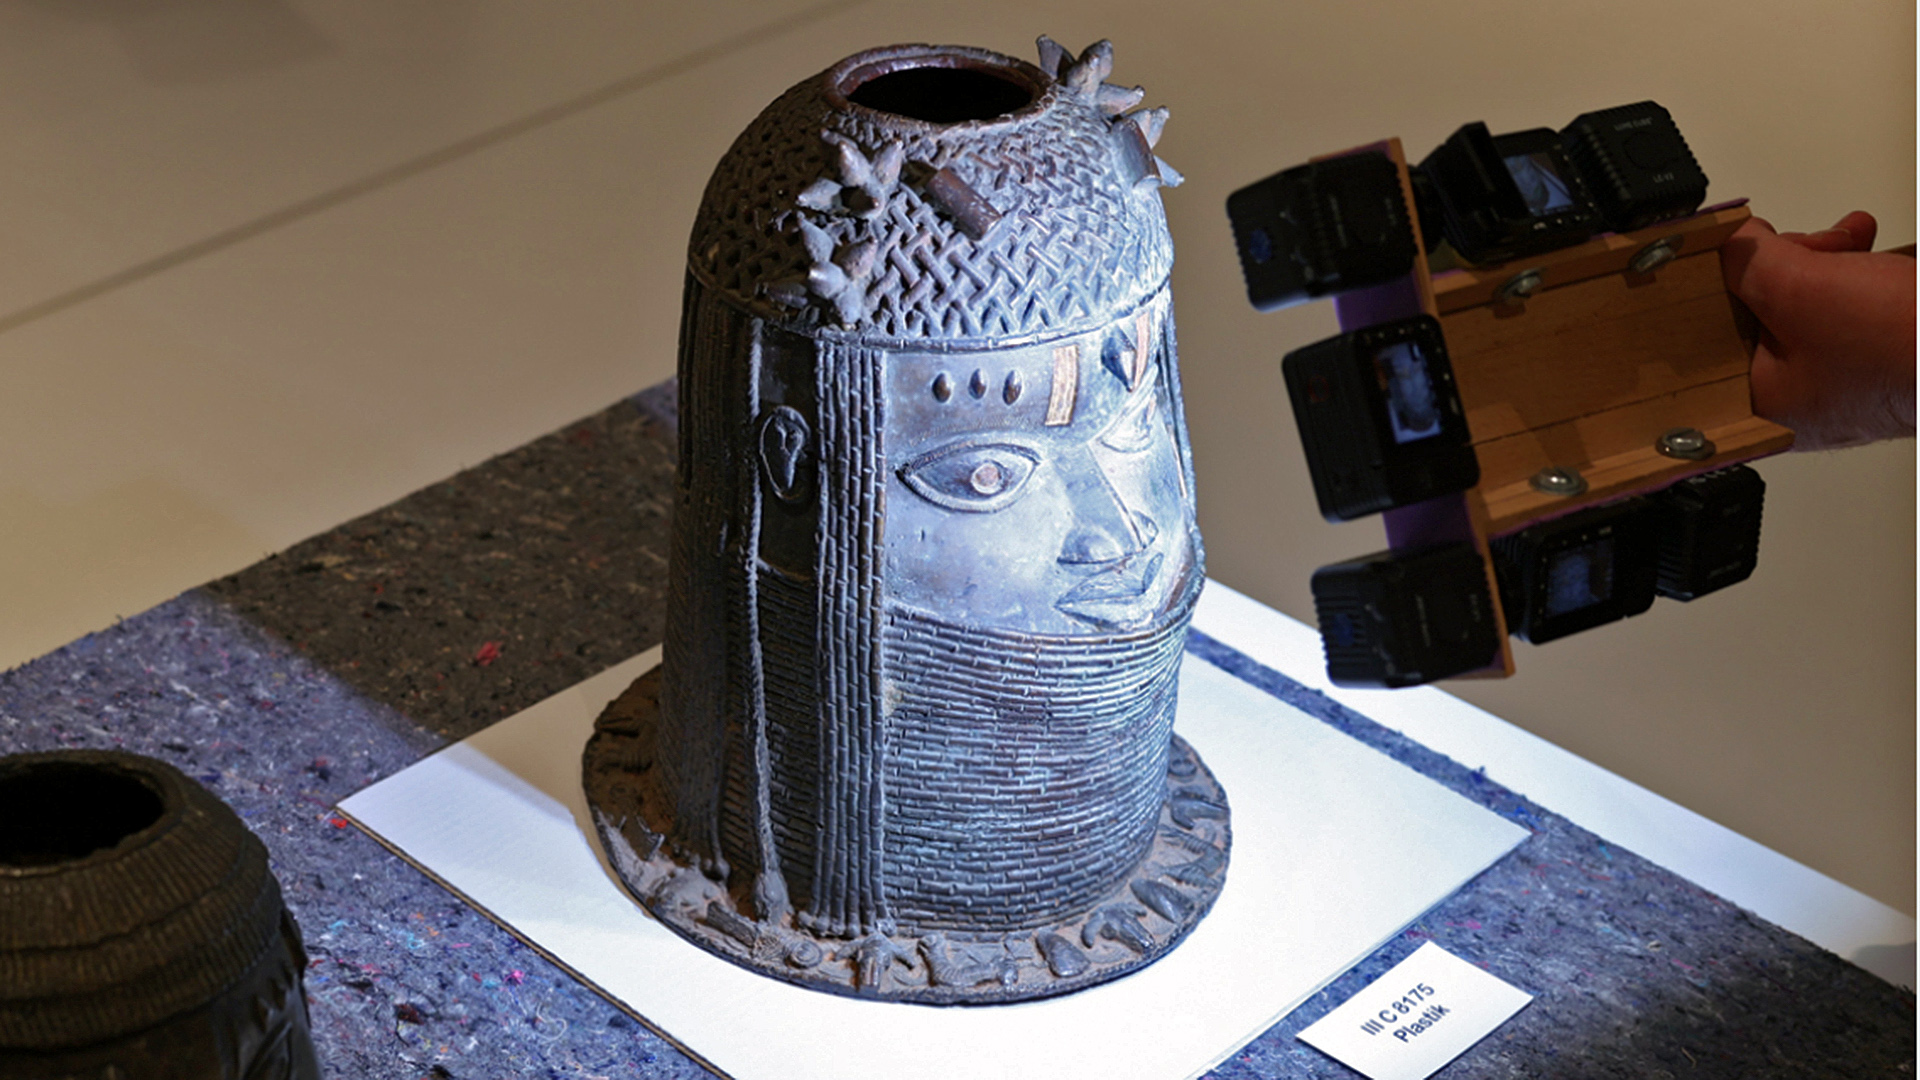 Plastiken der Benin-Bronzen aus der Ausstellung im Humboldt Forum werden gescannt, um sie danach für die Rückgabe nach Nigeria transportfähig zu verpacken. | dpa